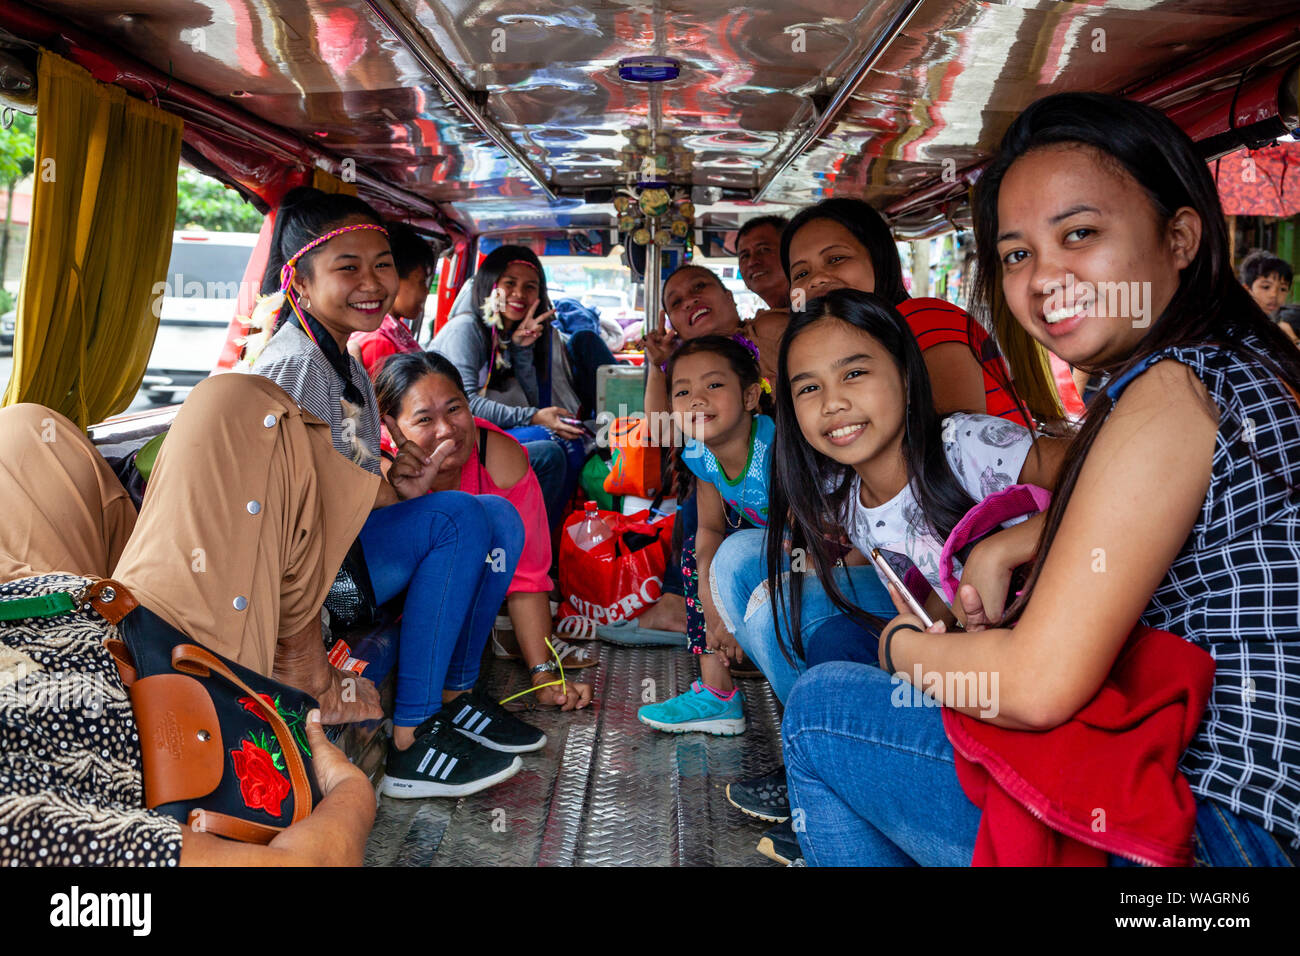 Felice il popolo filippino seduta all'interno di un Jeepney in attesa di partire, Kalibo, Panay Island, Aklan Provincia delle Filippine. Foto Stock